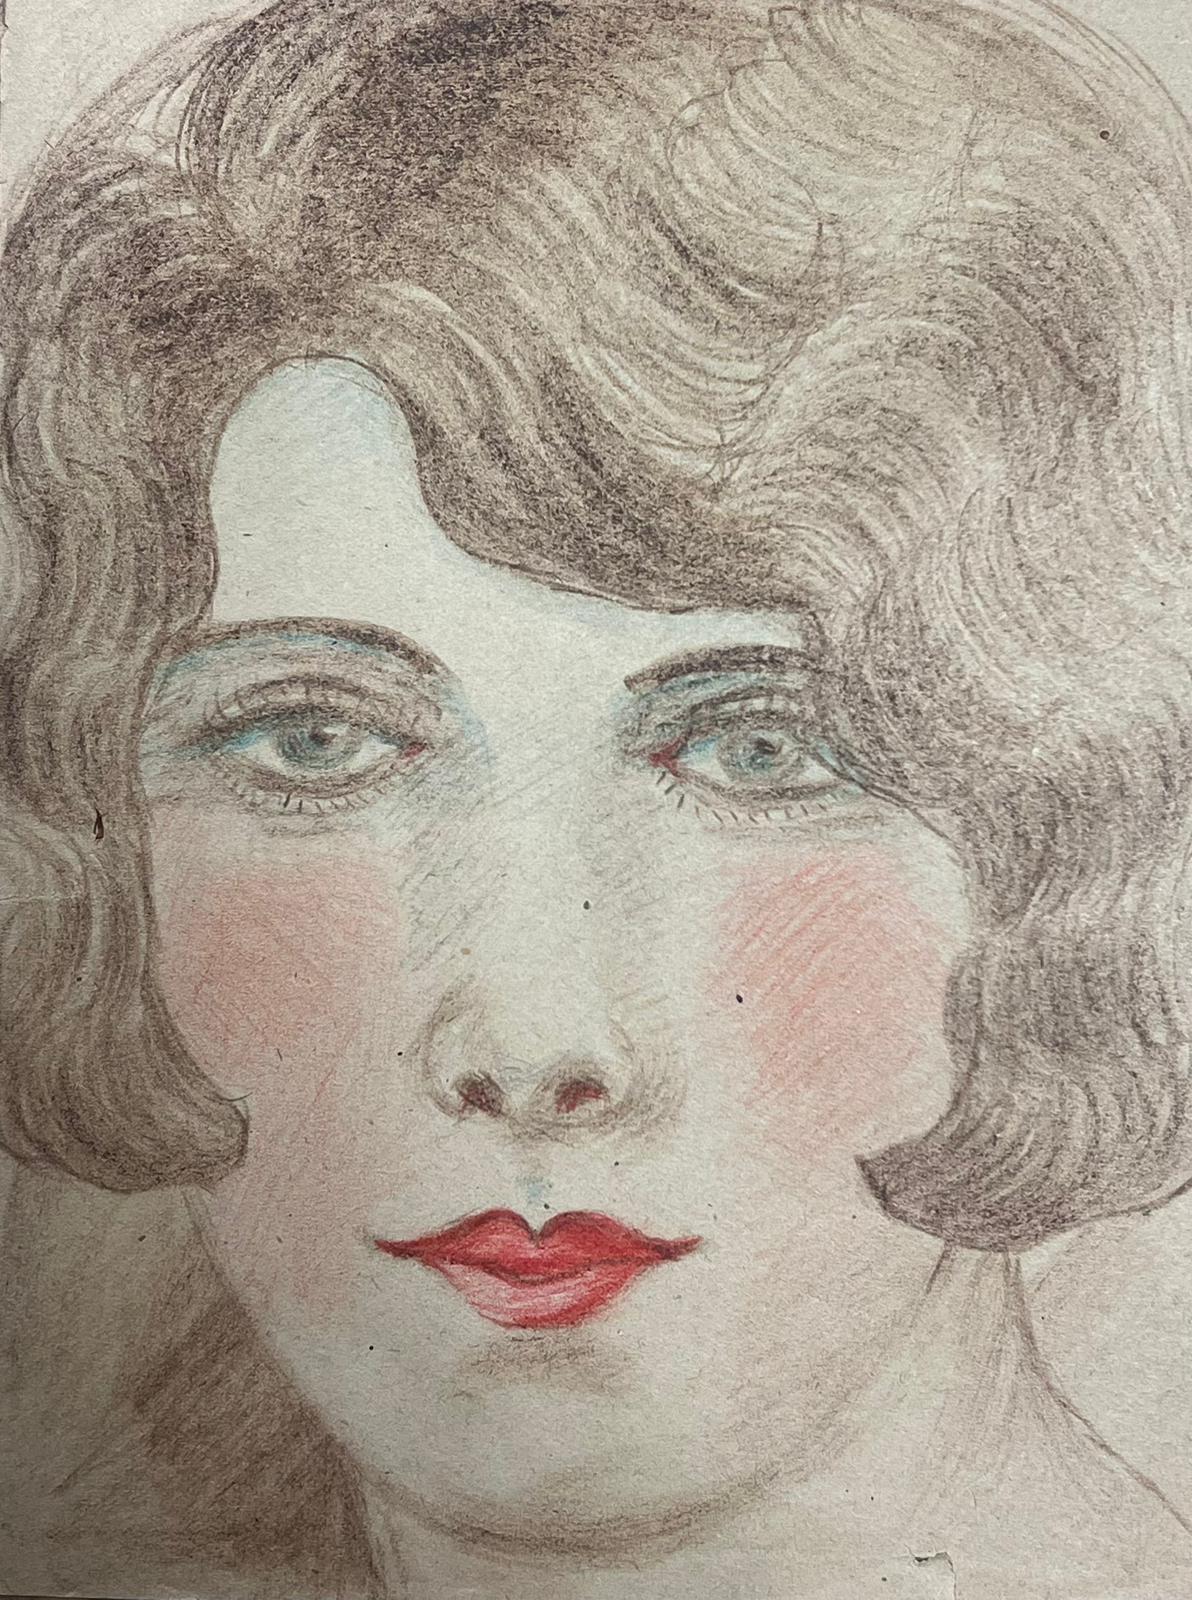 Rotes Lippenblaues Porträt einer eleganten jungen Gesellschafts Dame mit blauen Augen, exquisite Zeichnung 